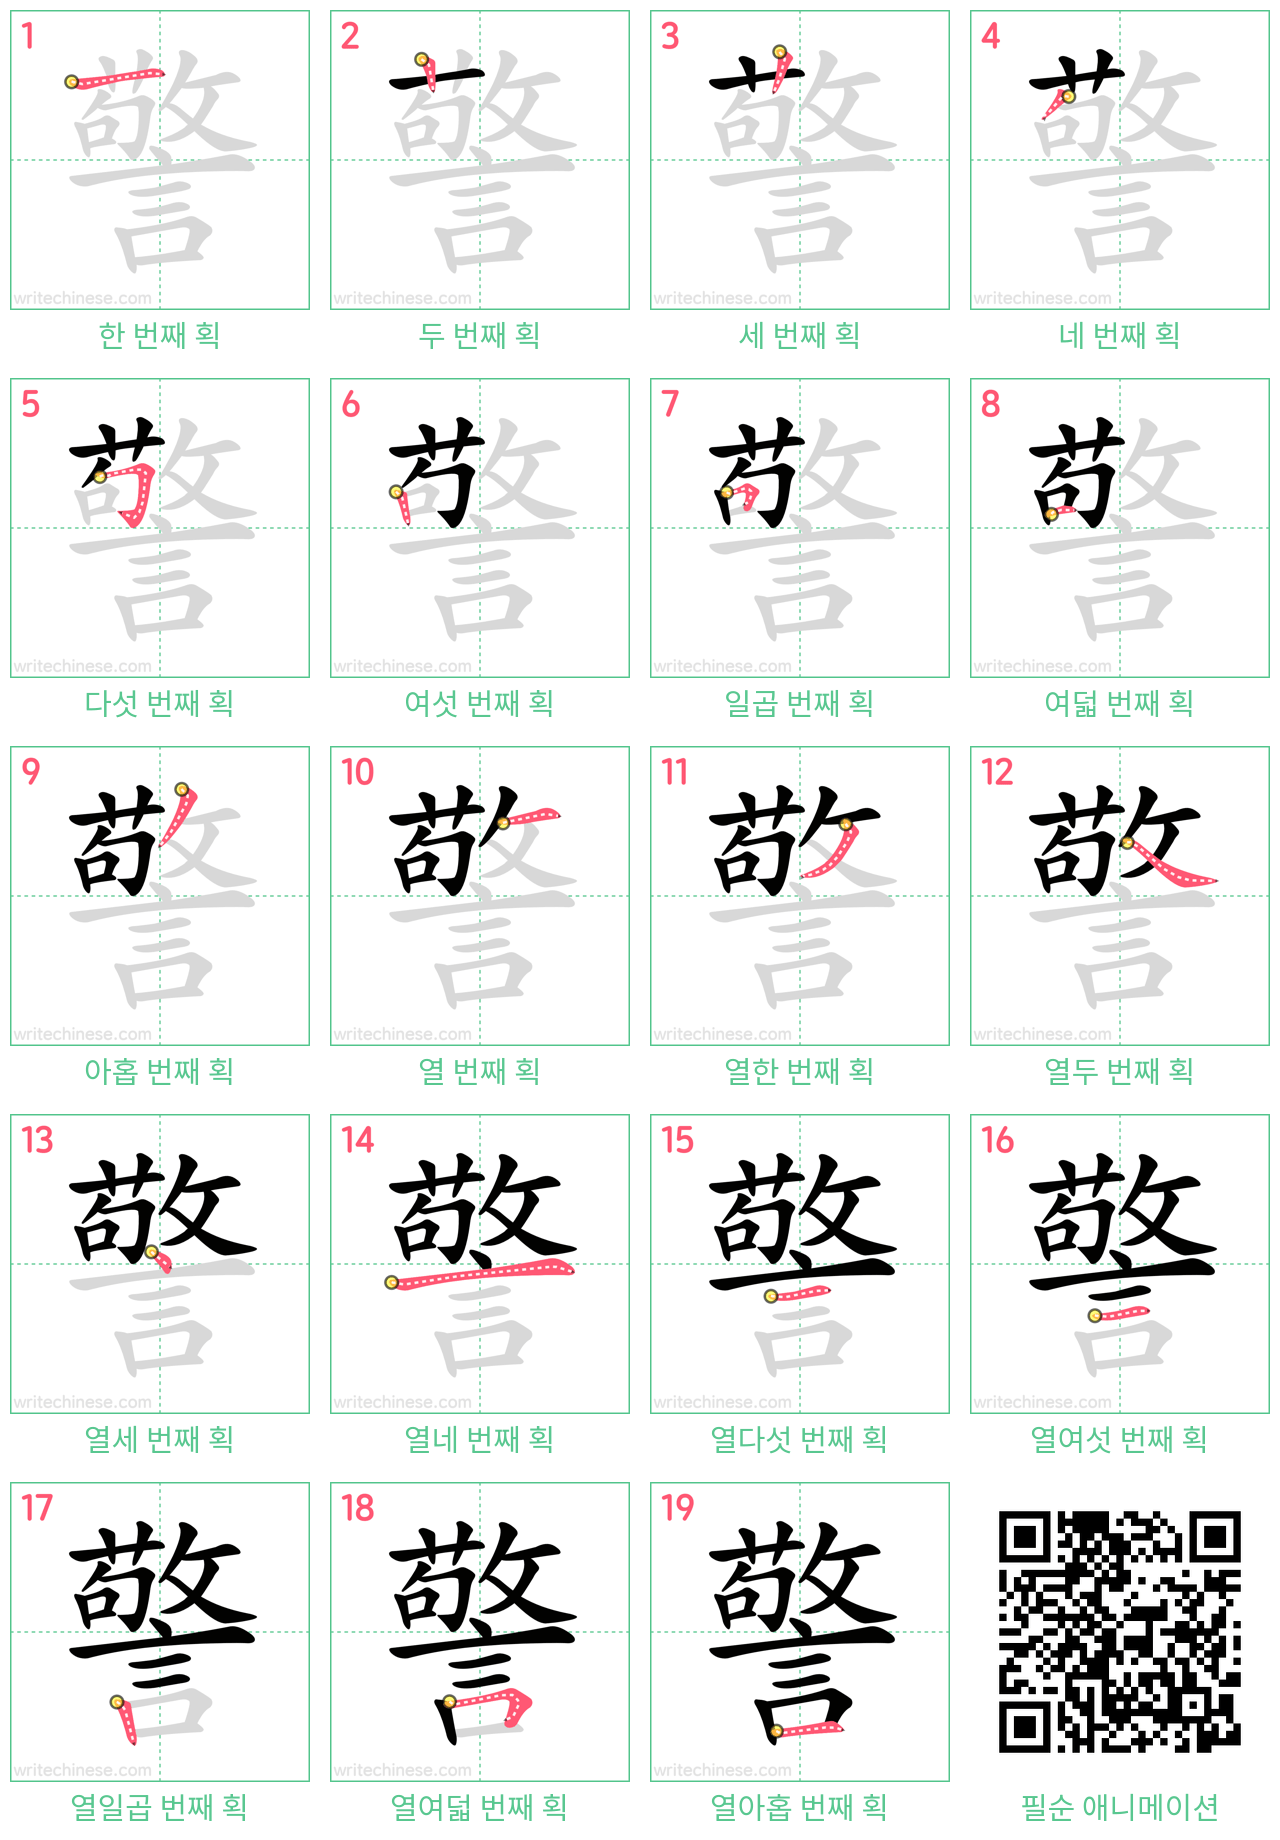 警 step-by-step stroke order diagrams